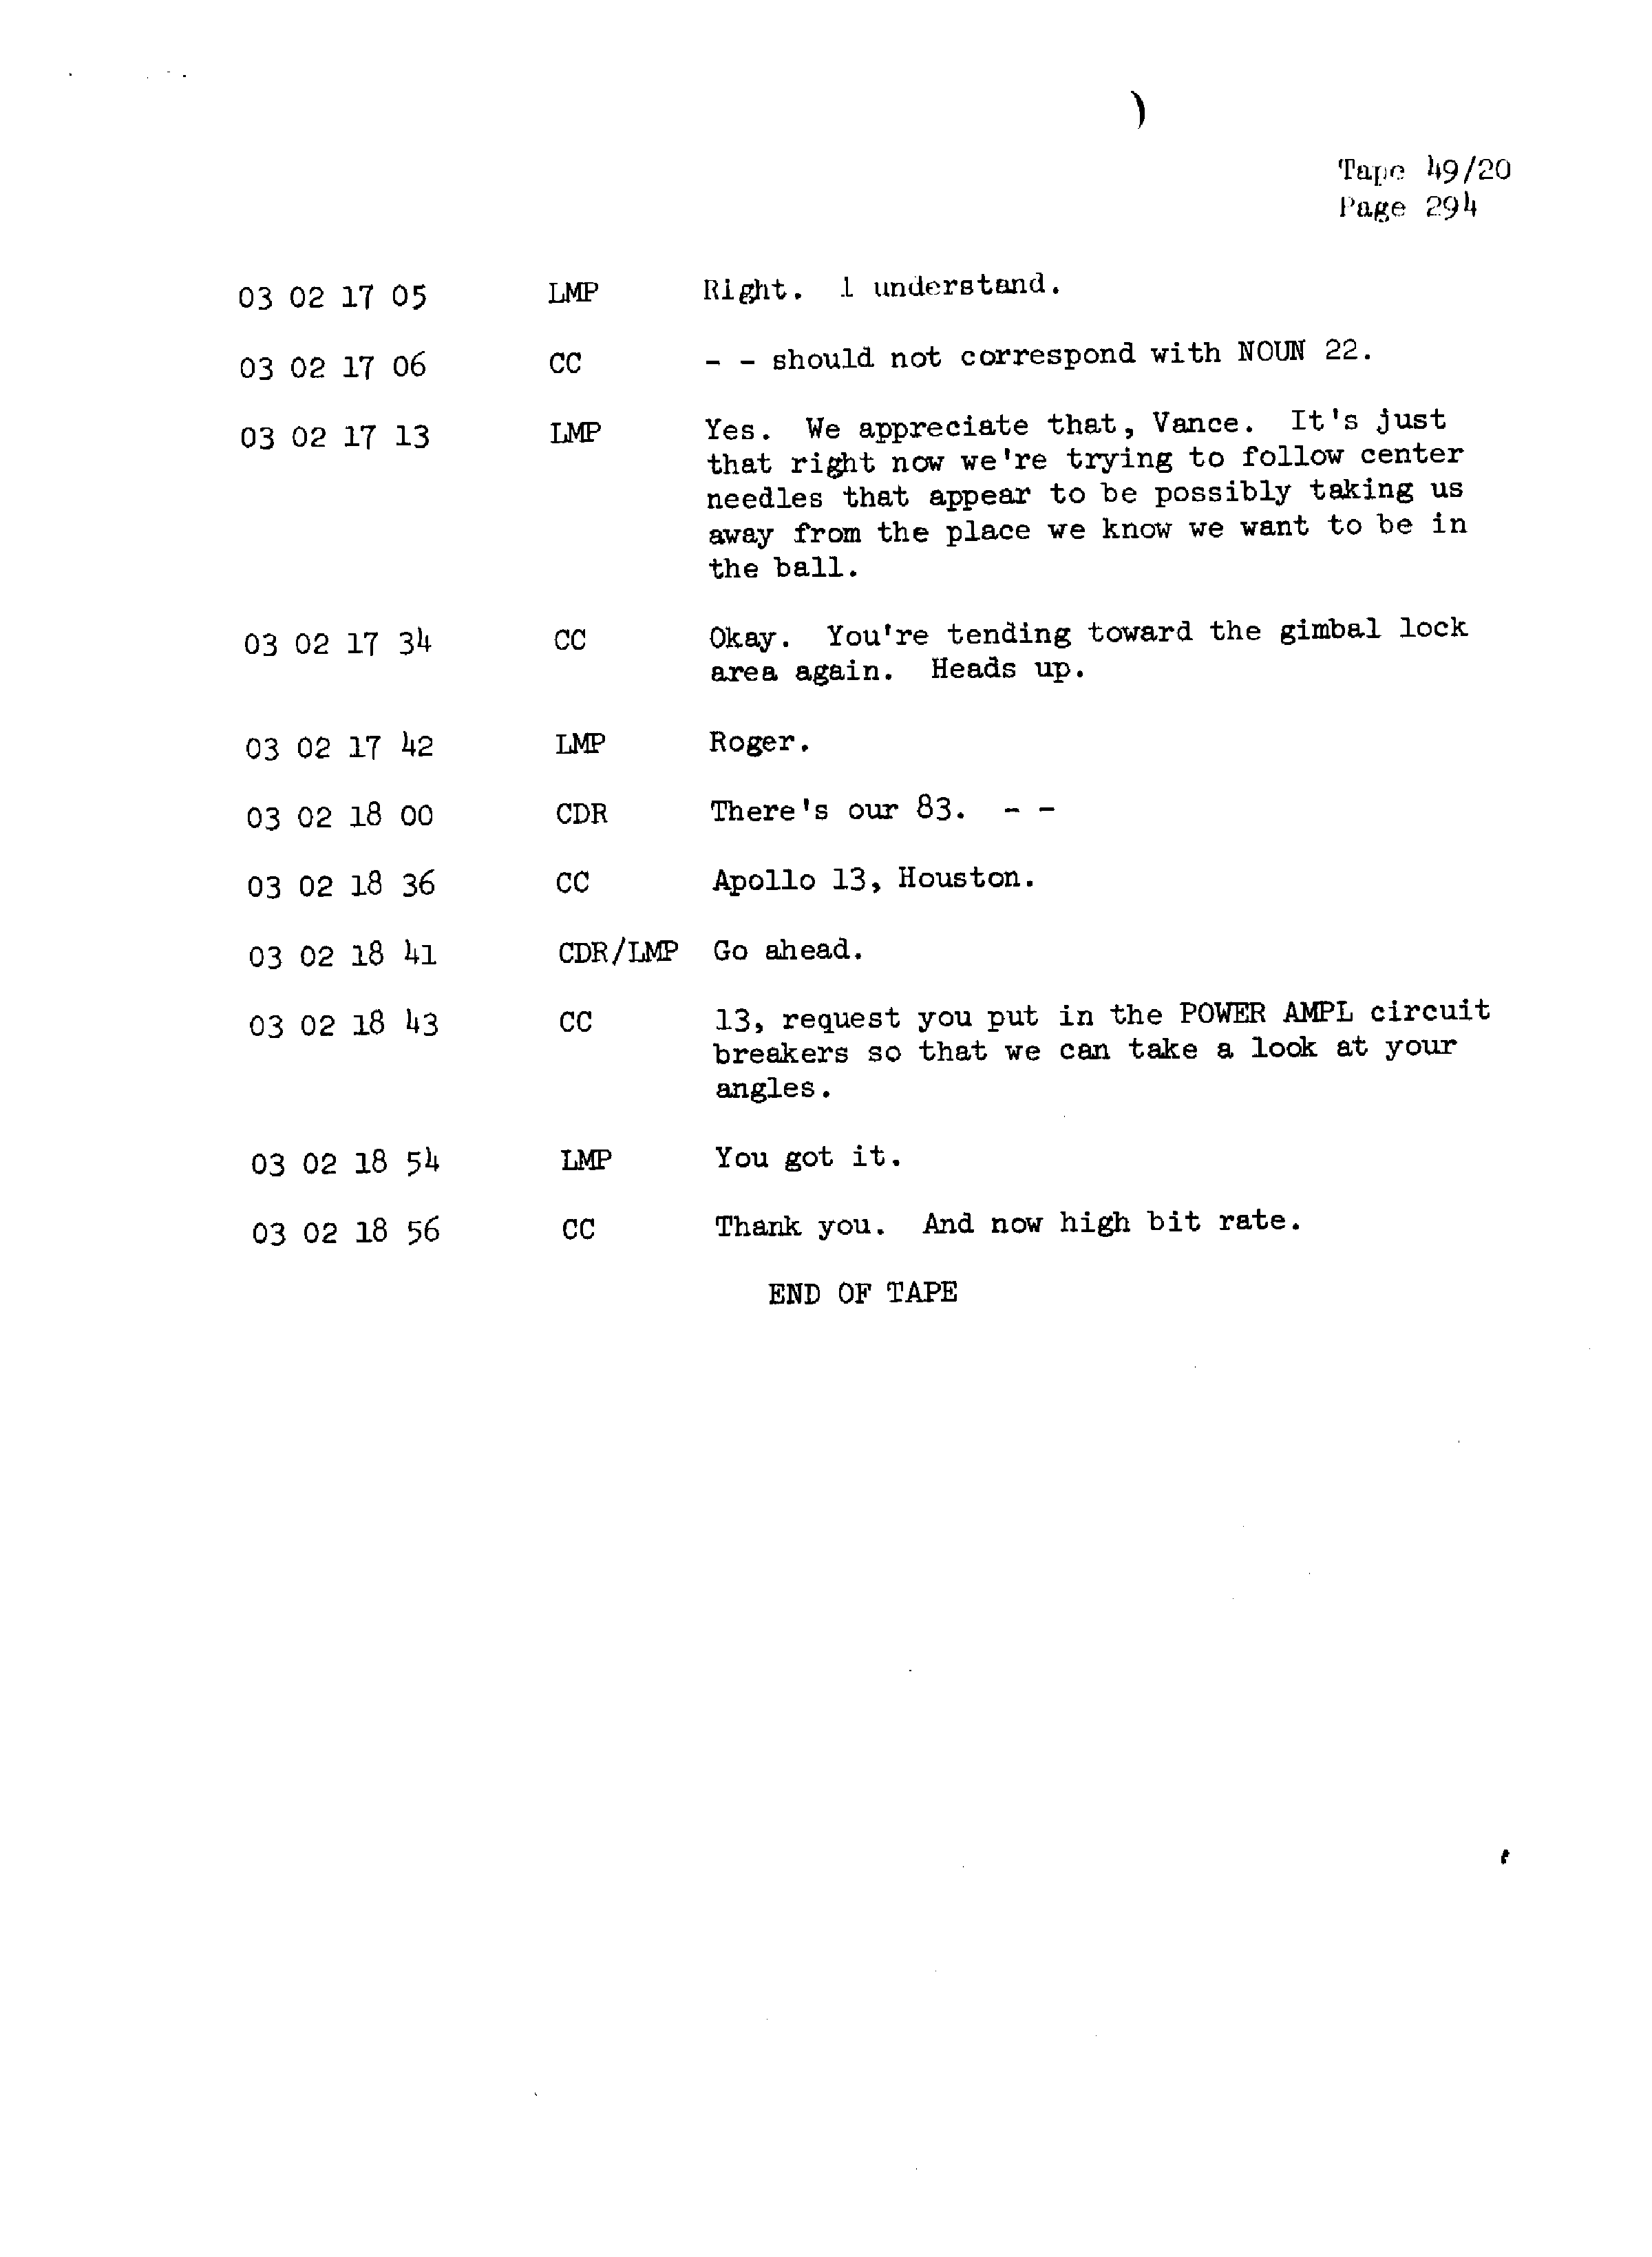 Page 301 of Apollo 13’s original transcript